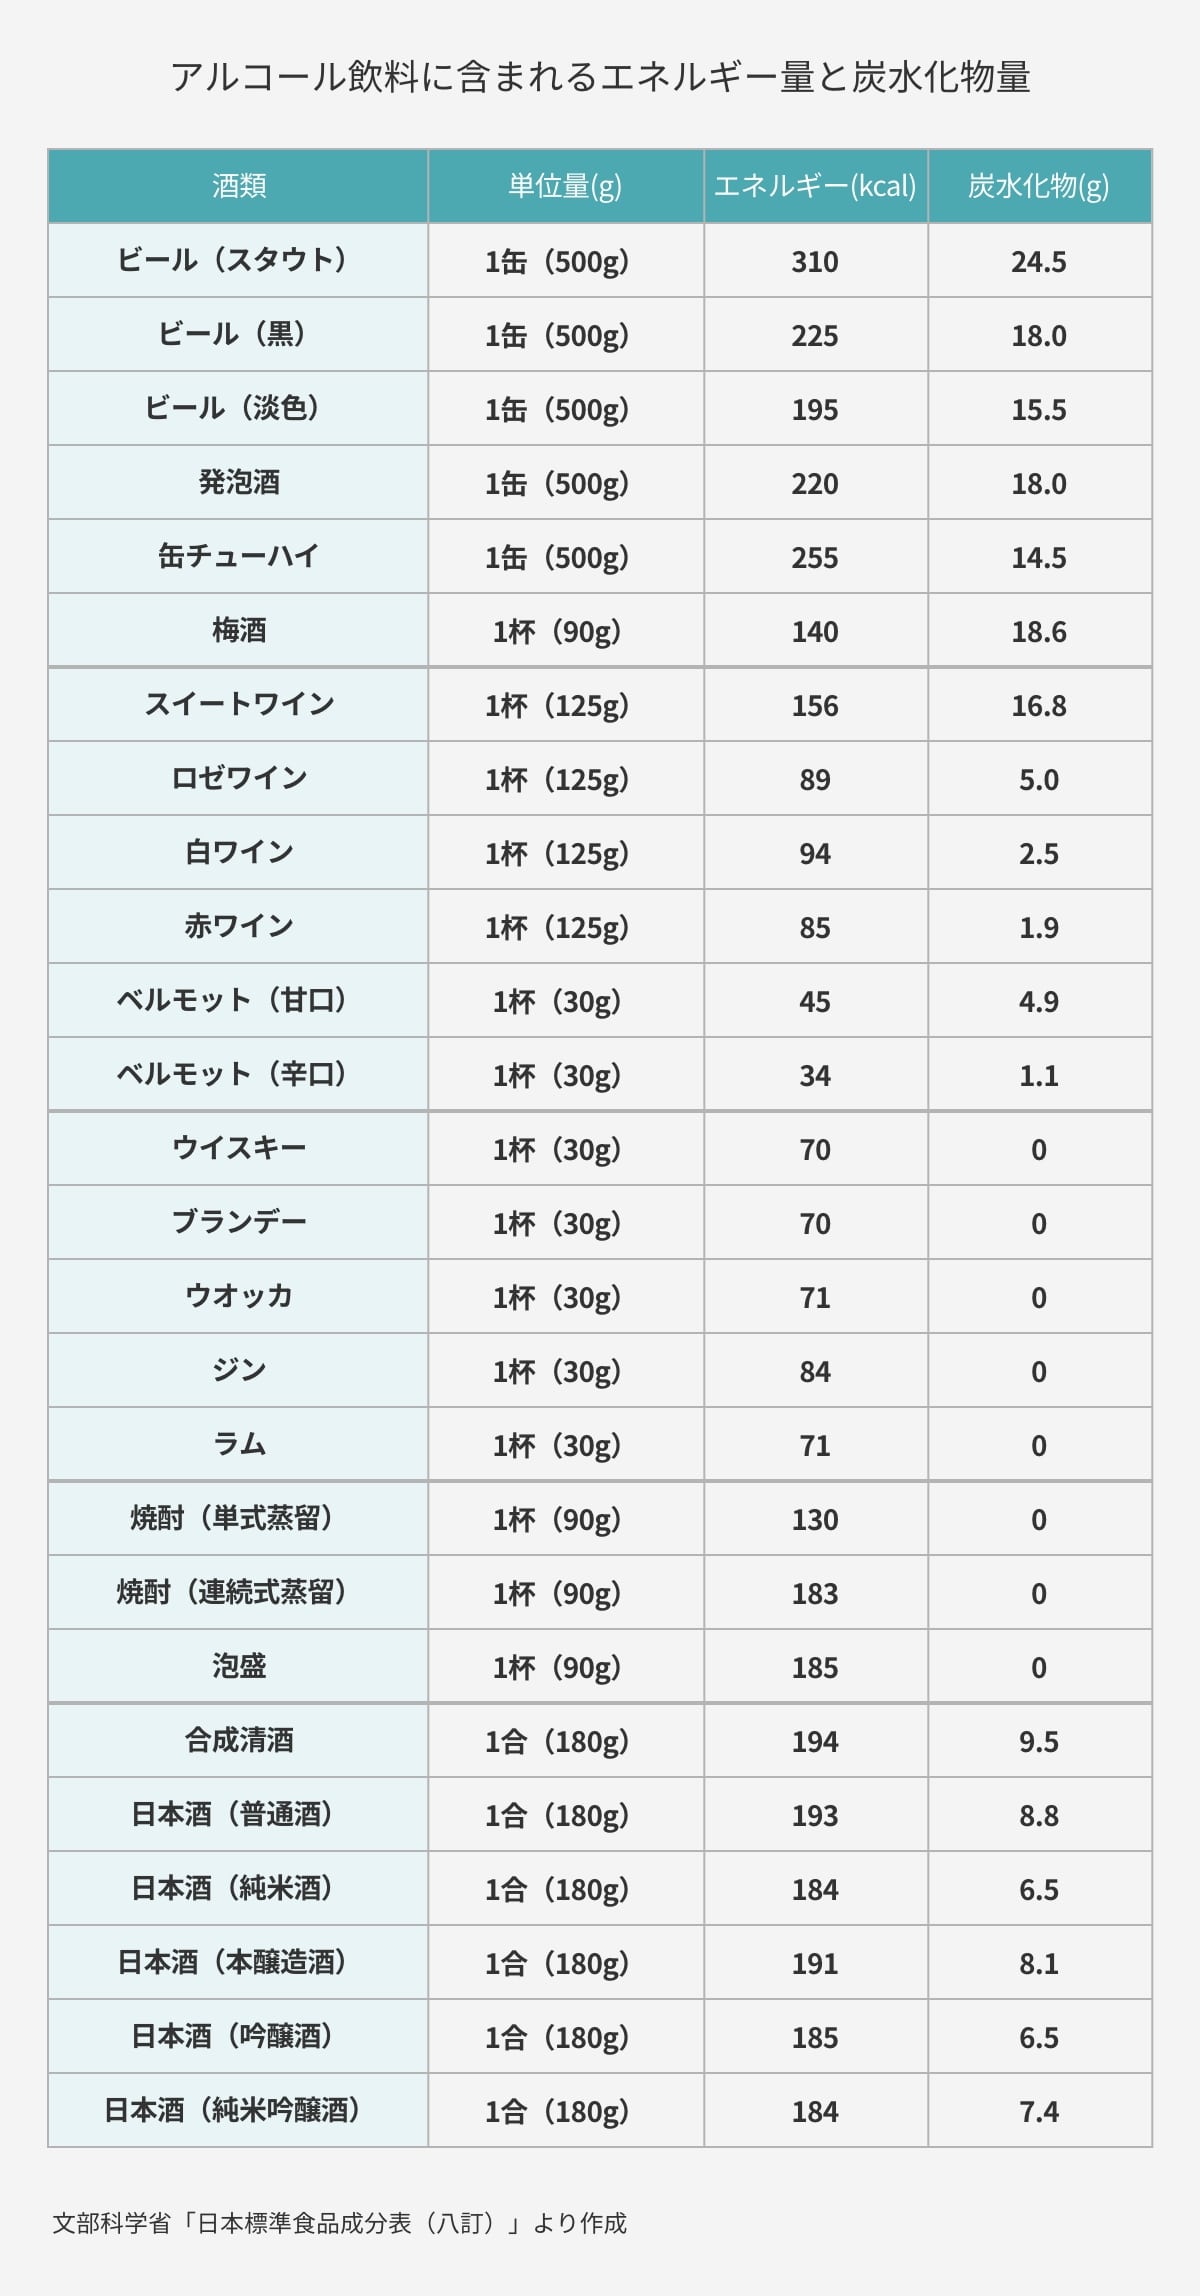 アルコール飲料に含まれるエネルギー量と炭水化物量(文部科学省「日本標準食品成分表（八訂）」より作成)